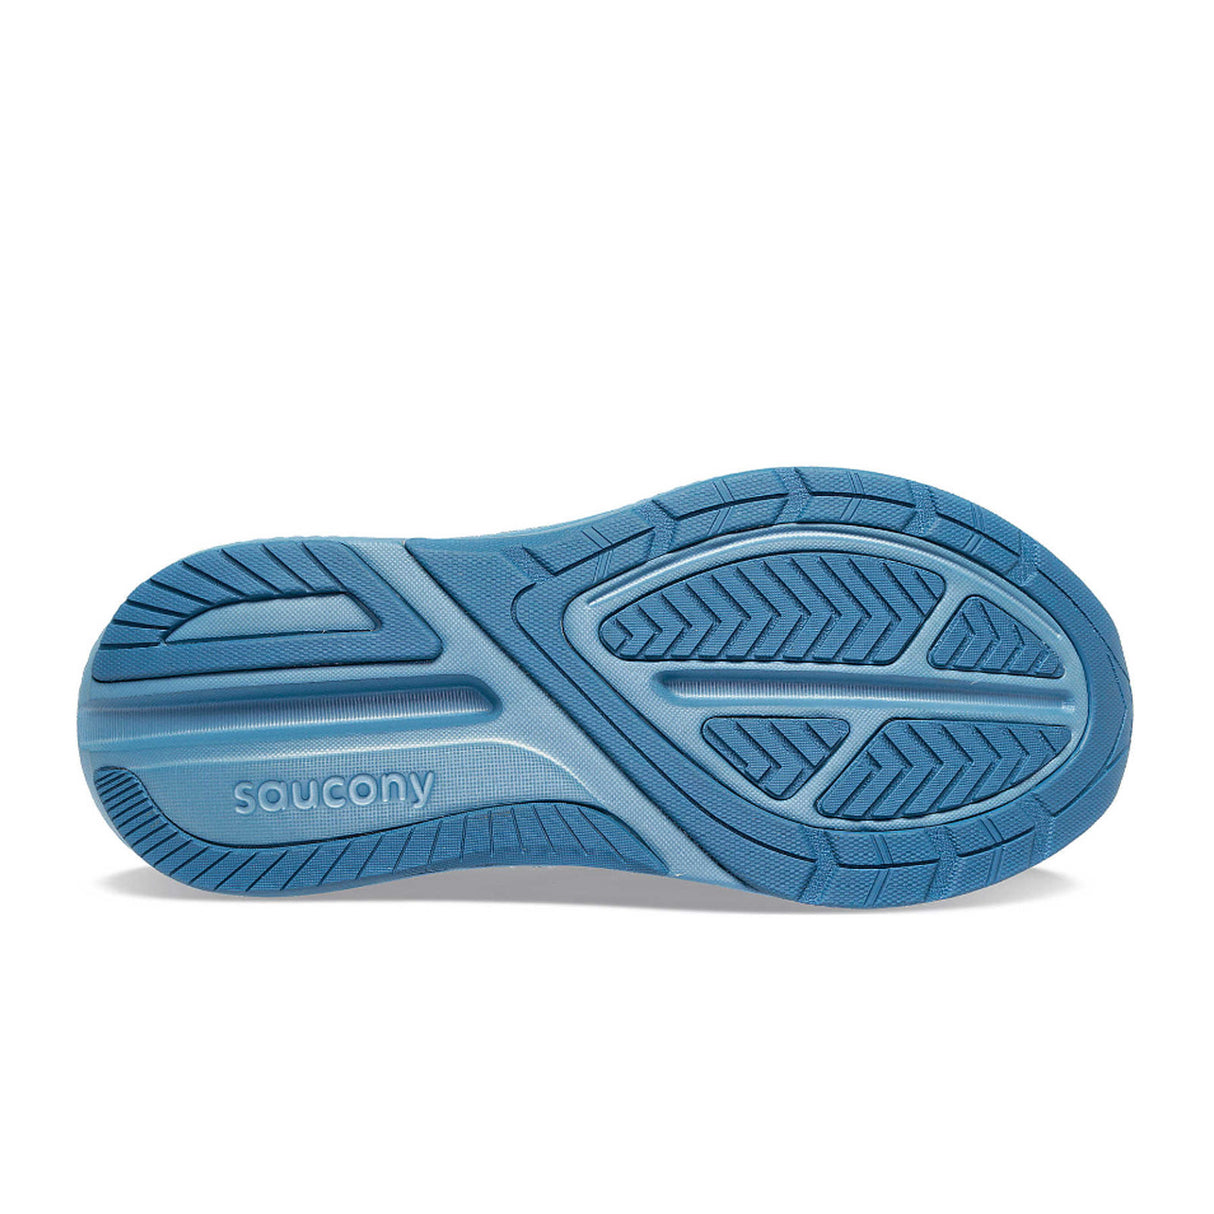 Saucony Echelon 9 Running Shoe (Women) - Skyway Athletic - Running - The Heel Shoe Fitters